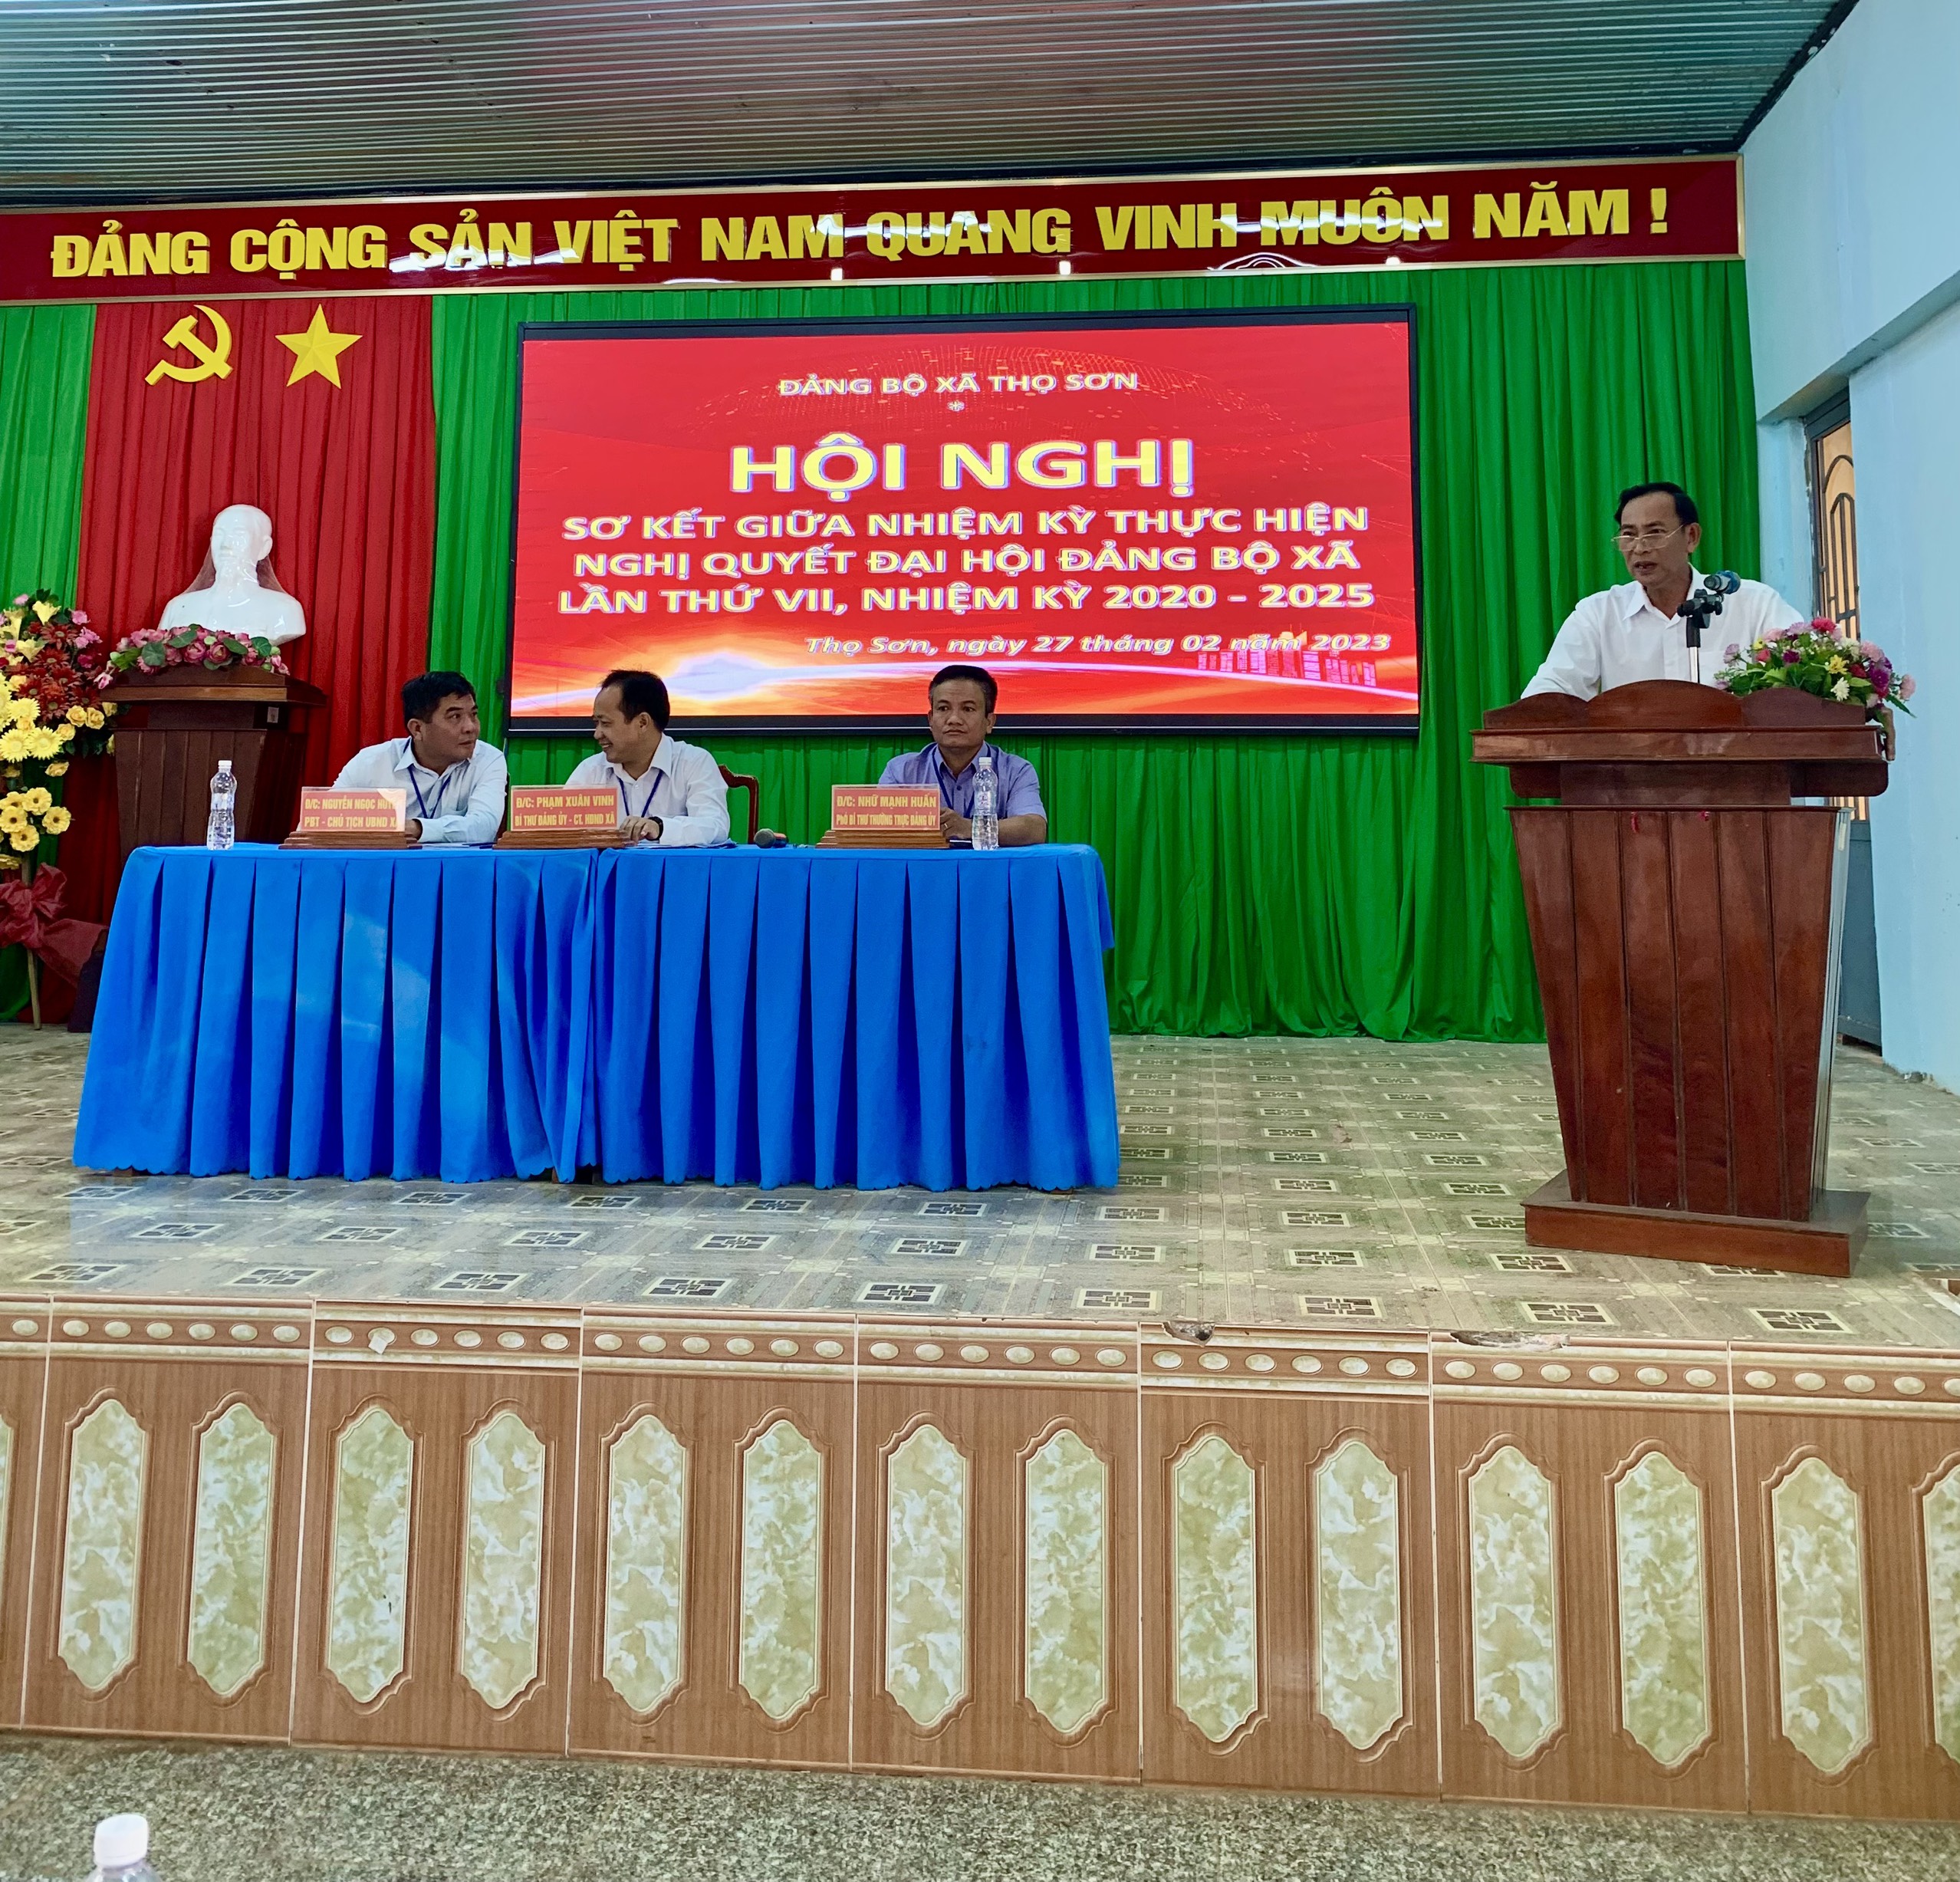 BCH Đảng bộ xã Thọ Sơn tổ chức hội nghị Sơ kết giữa nhiệm kỳ.